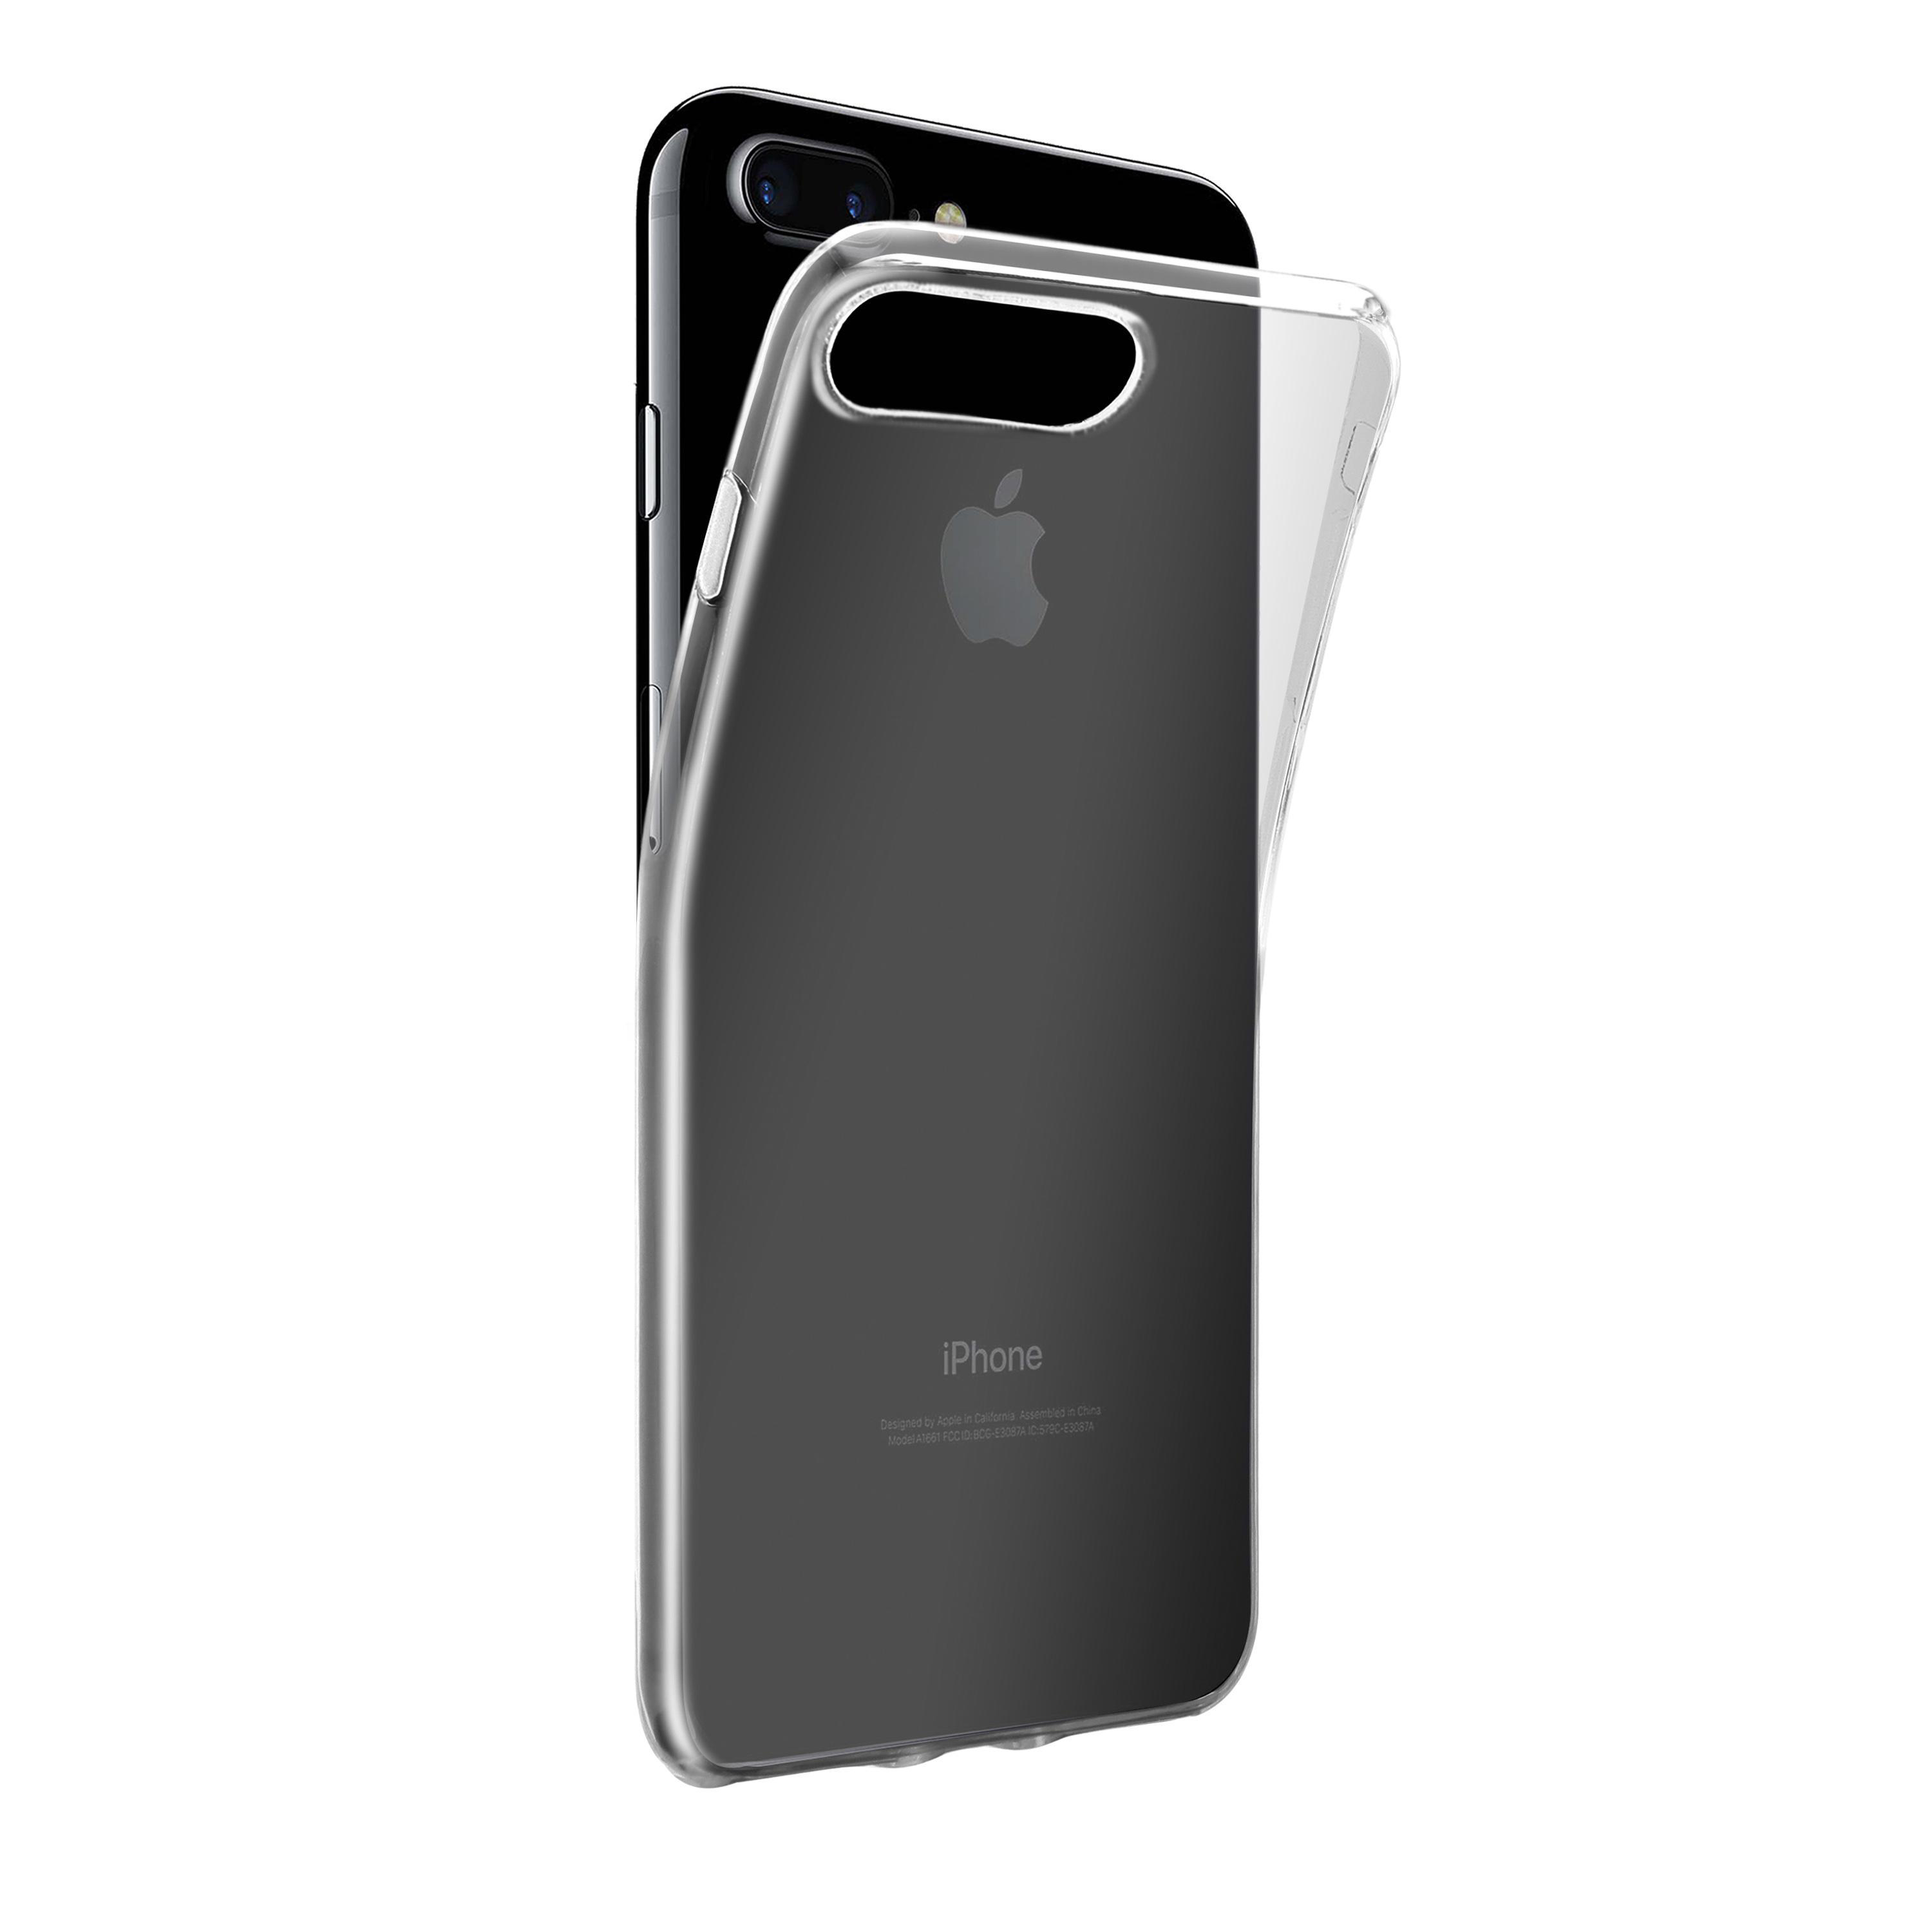 Plus, Apple, 8 Backcover, iPhone VIVANCO Transparent Plus, Super 7 Slim, iPhone